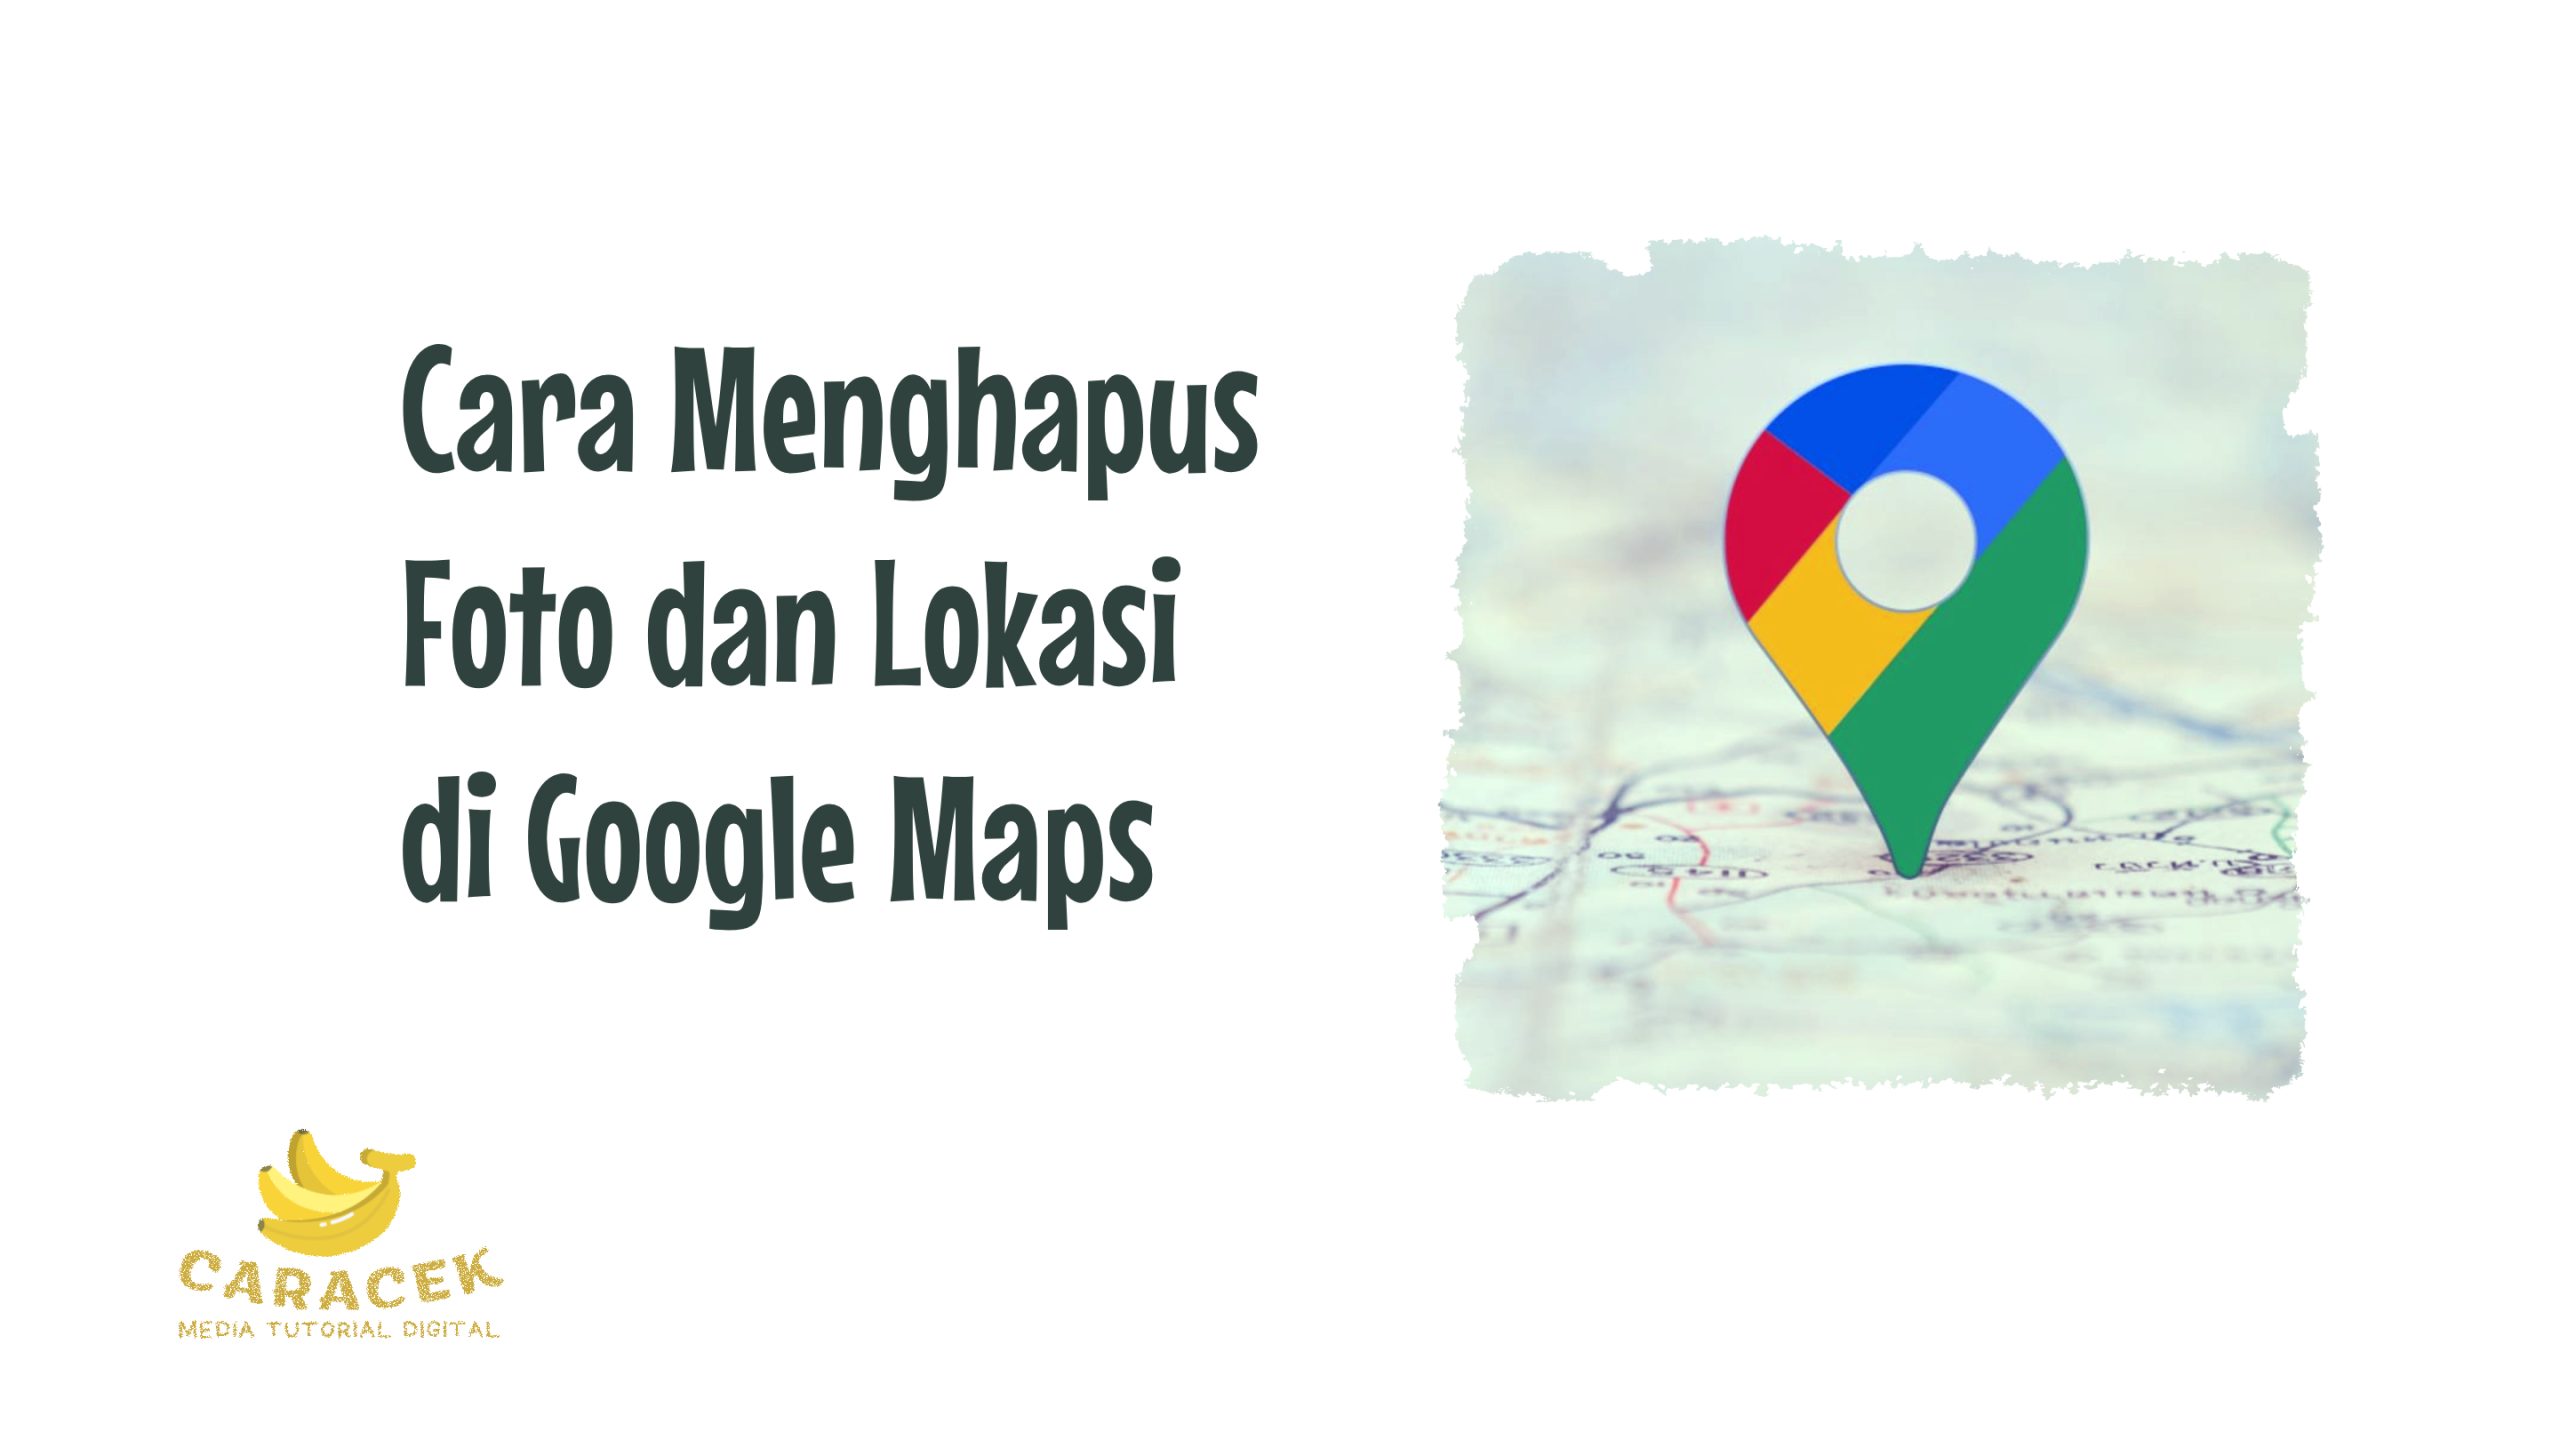 Cara Menghapus Foto dan Lokasi di Google Maps